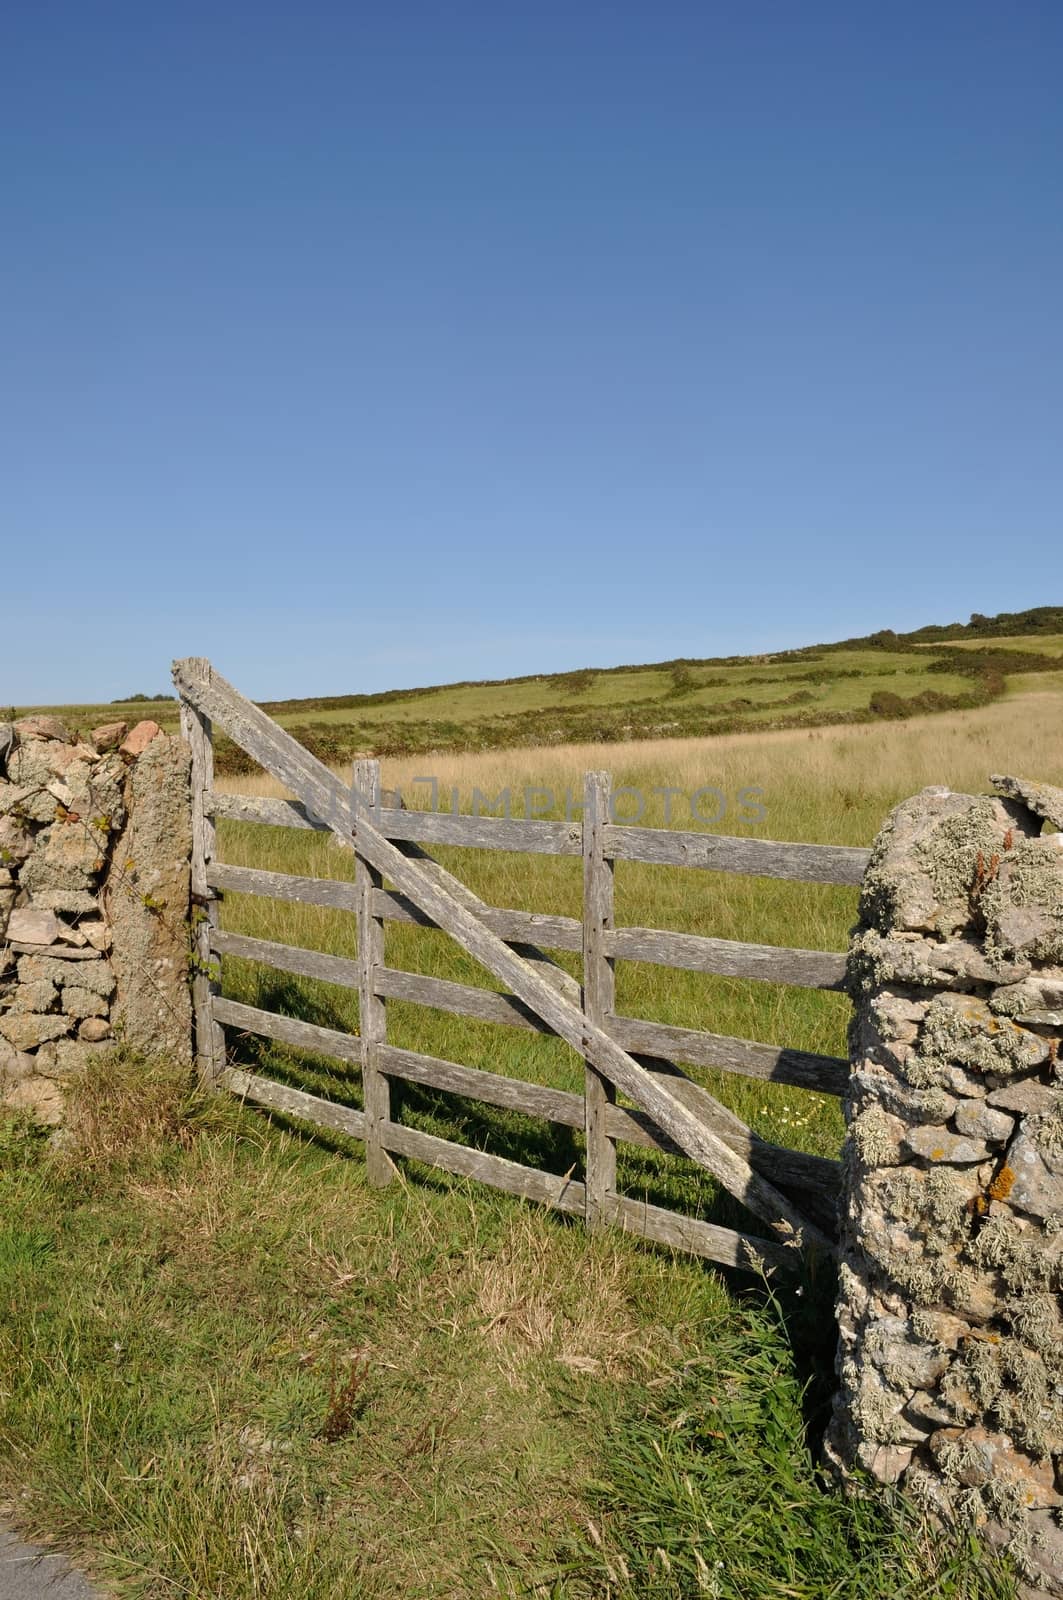 Wooden gate in field